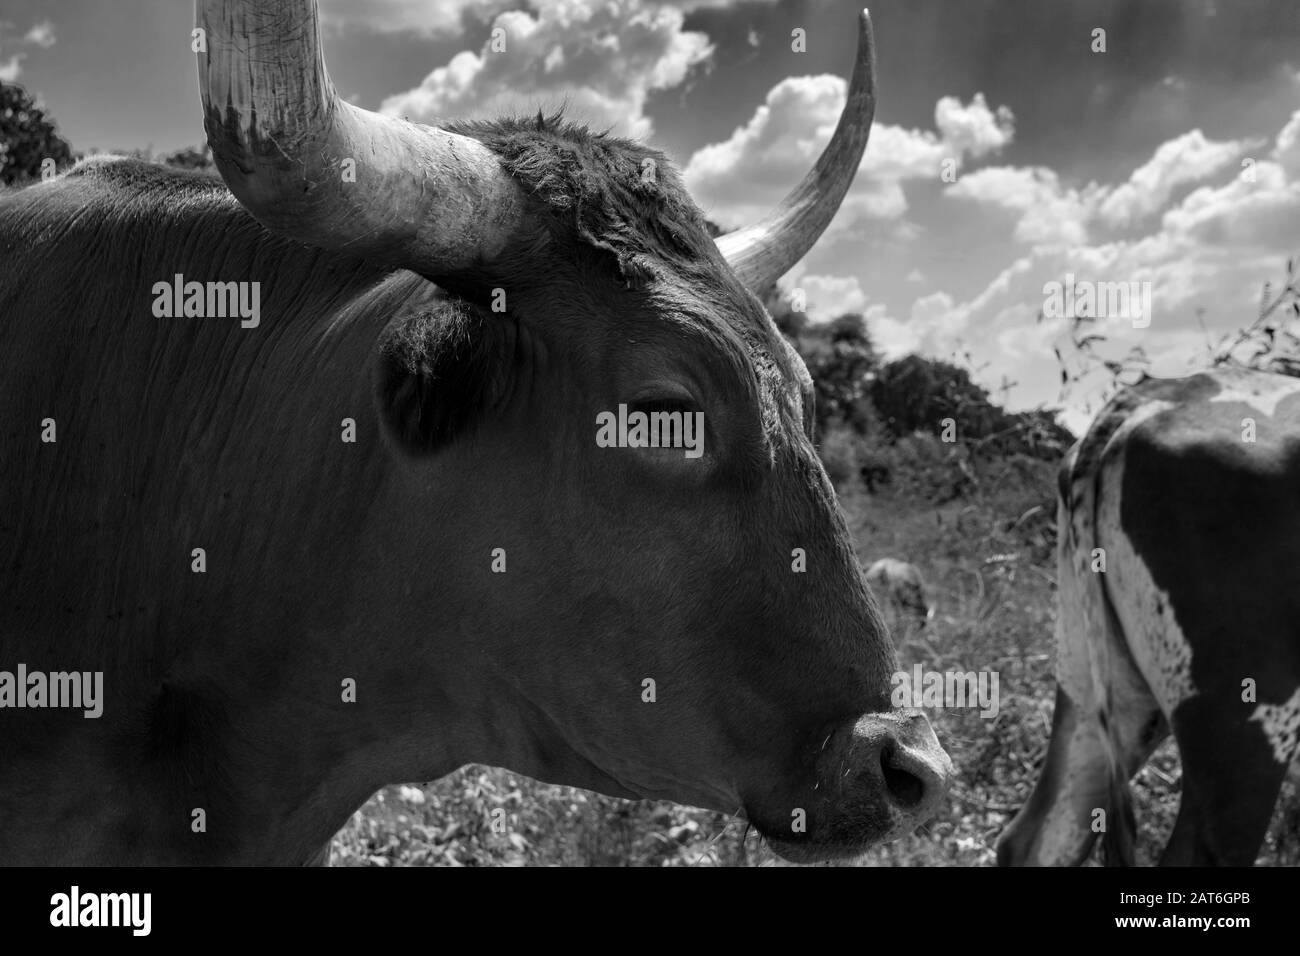 Profil de gros plan d'un taureau de Longhorn avec de longues cornes incurvées debout avec d'autres bovins dans son troupeau dans un pâturage de ranch surcultivé avec des mauvaises herbes et un certain arbre Banque D'Images